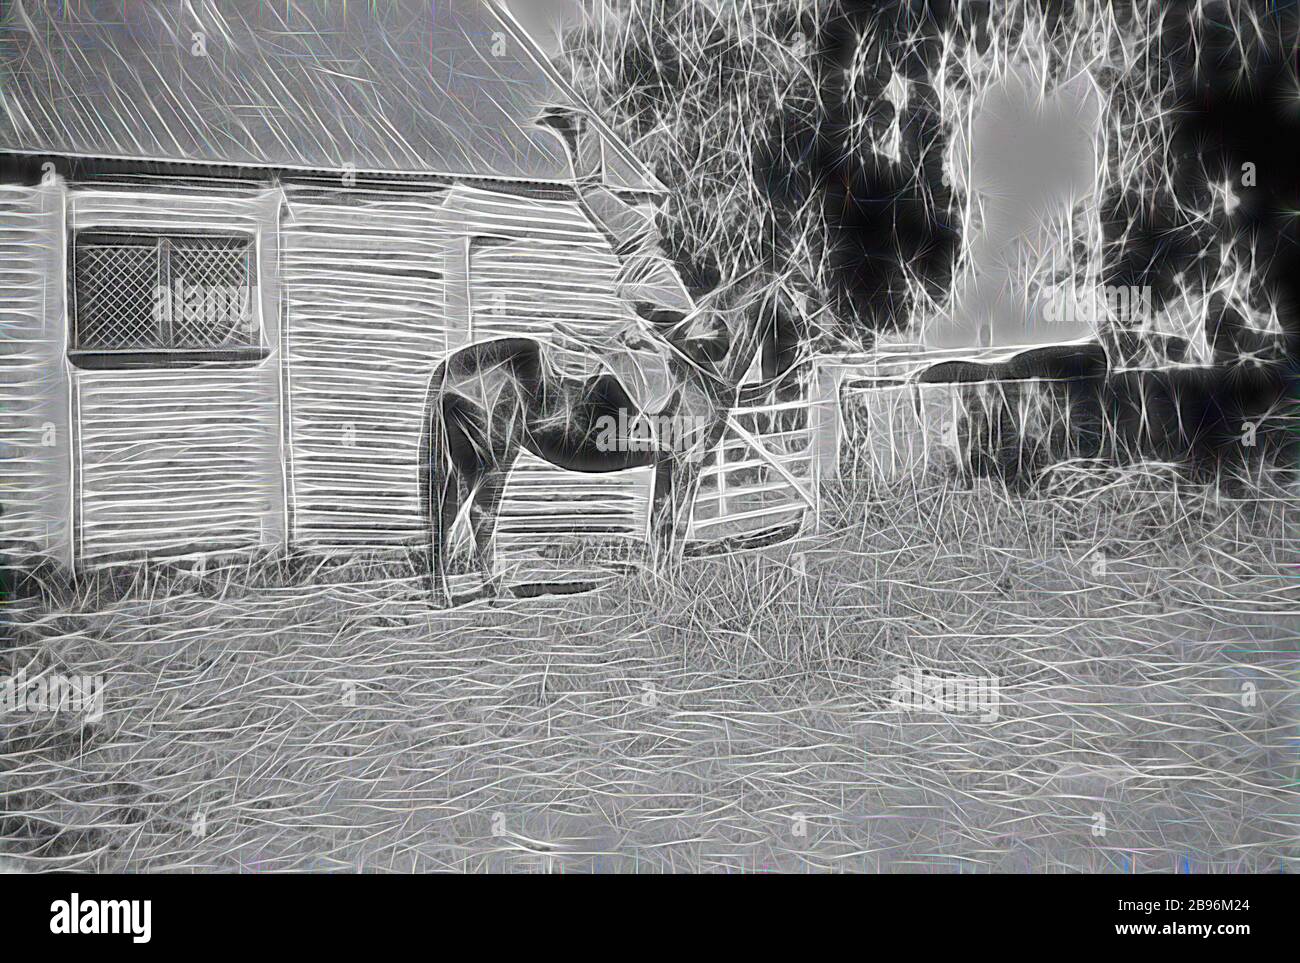 Négatif - Deniliquin District, Nouvelle-Galles du Sud, 1932, UN chacaron faisant une main sur son cheval. En arrière-plan se trouvent les écuries de la gare de 'Wrurah'. Ils sont construits à partir de grumes avec un toit en fer ondulé., repensé par Gibon, design de gai chaud gai de luminosité et de rayons de lumière radiance. L'art classique réinventé avec une touche moderne. La photographie inspirée du futurisme, qui embrasse l'énergie dynamique de la technologie moderne, du mouvement, de la vitesse et révolutionne la culture. Banque D'Images